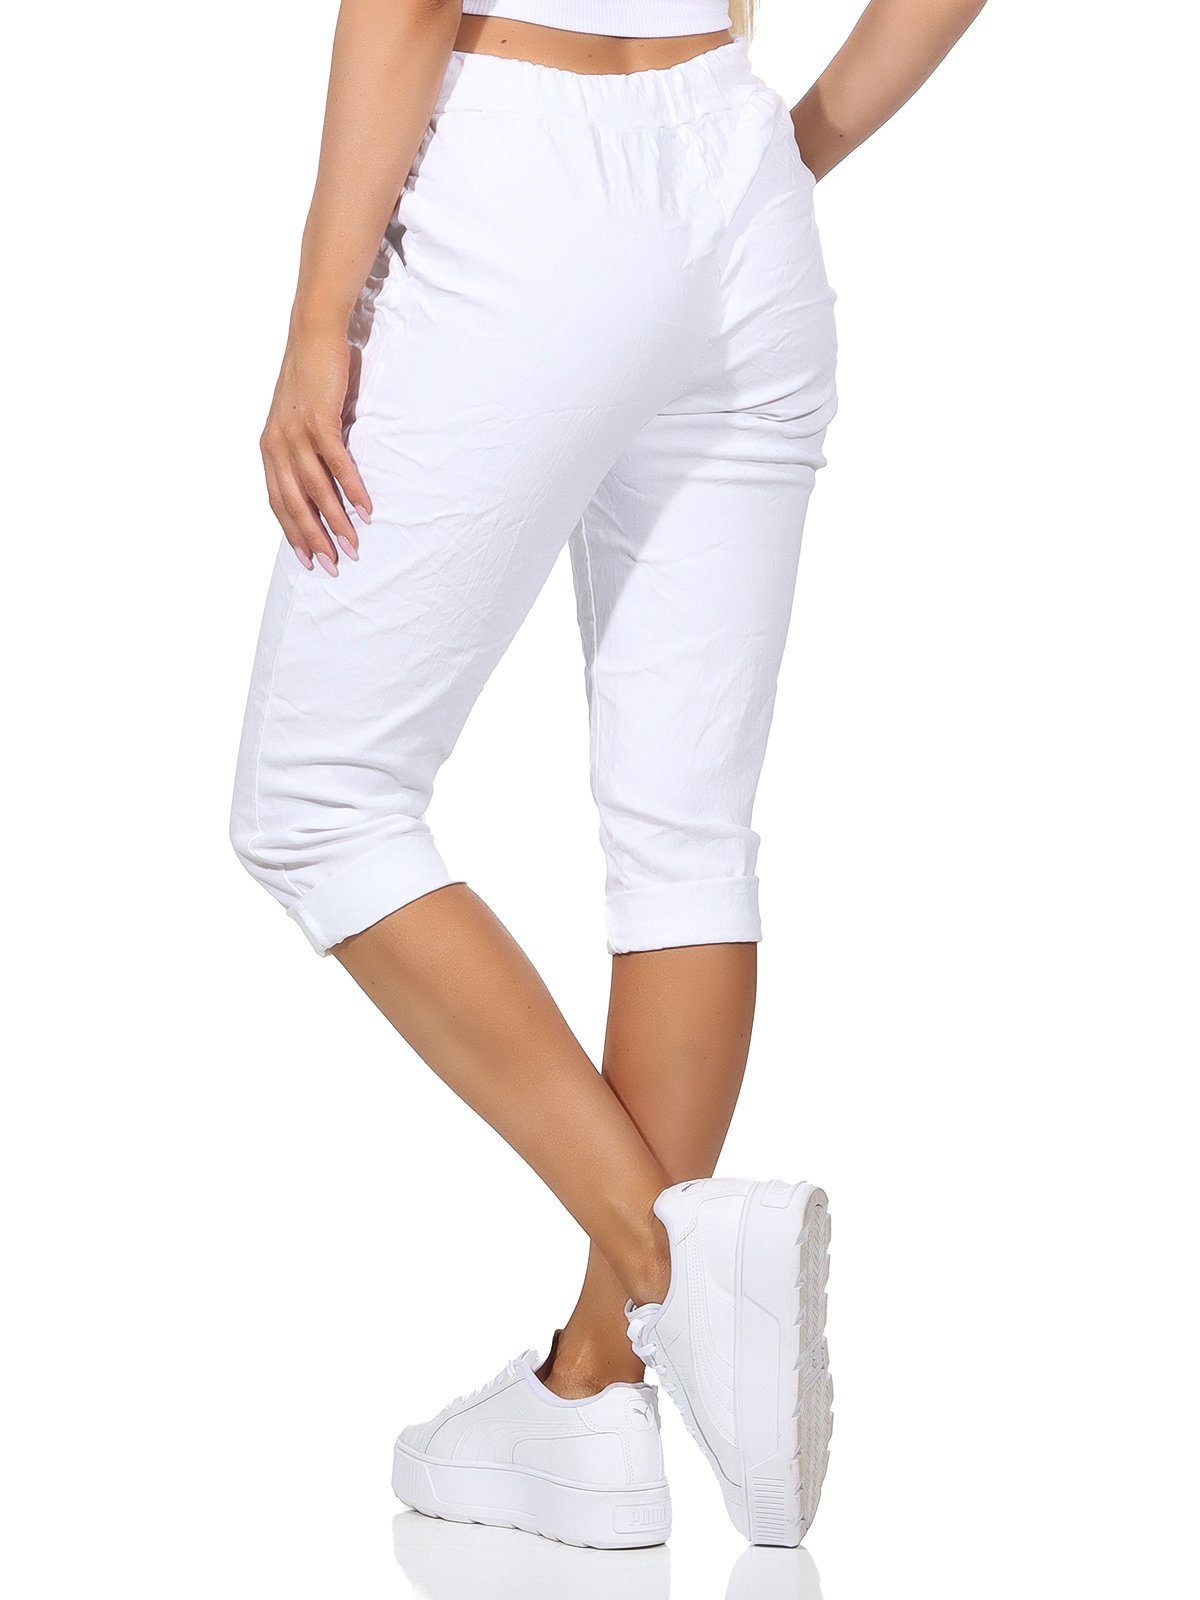 Aurela Damenmode Kordelzug, sommerlichen Hose Capri Taschen Bermuda Sommerhose Damen Farben, Weiß in Kurze 36-44 Jeans 7/8-Hose und